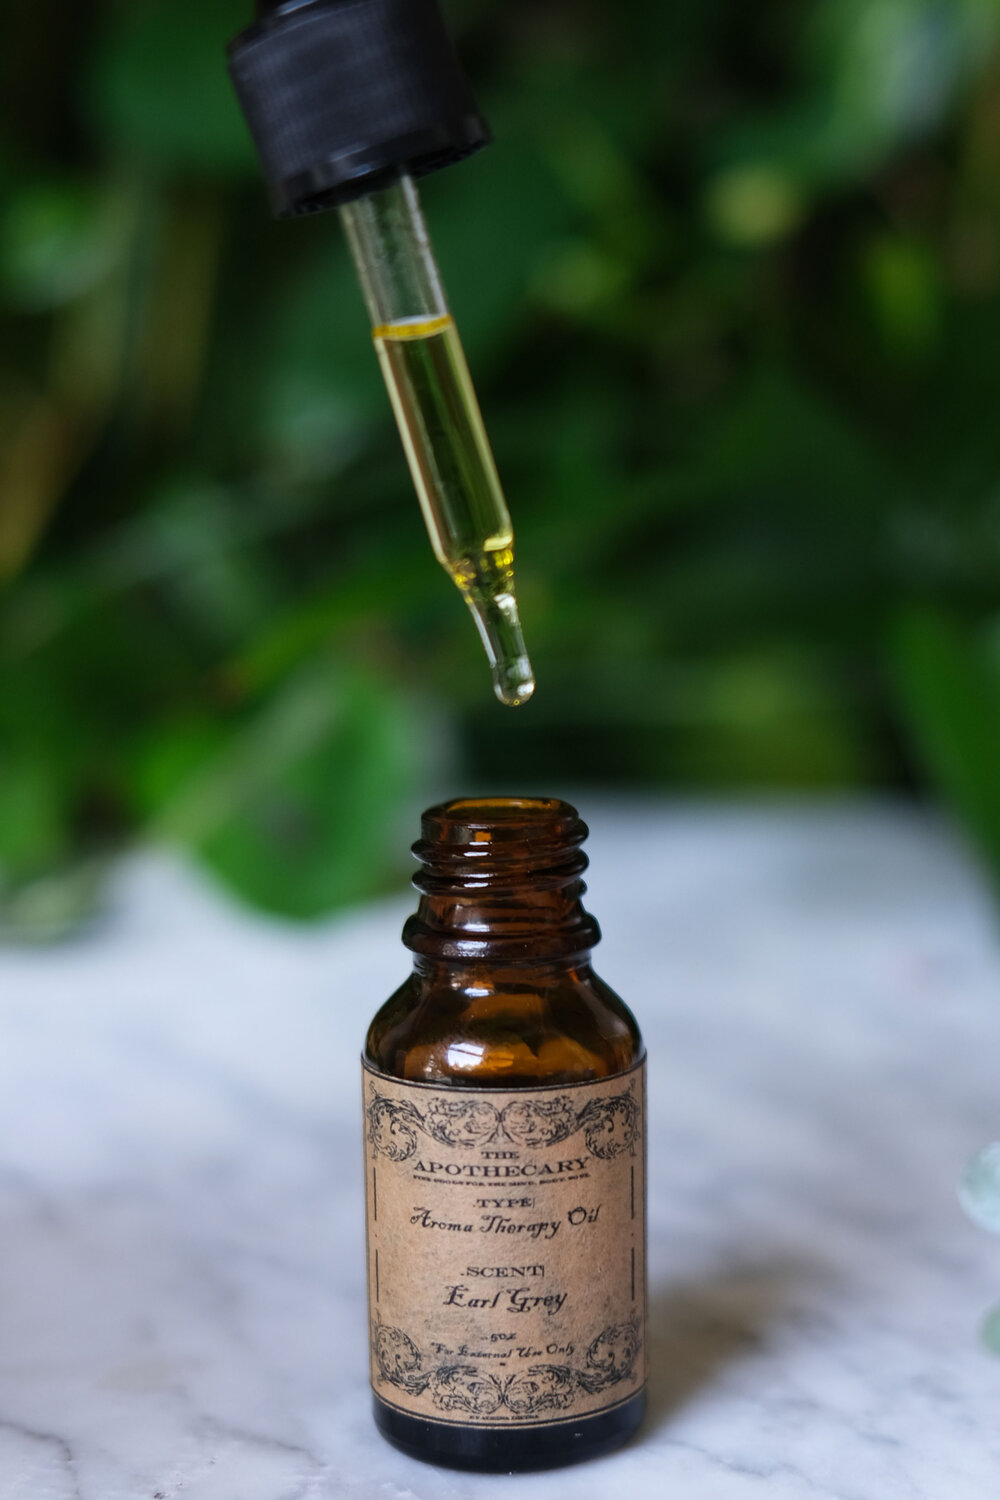 Aromatherapy Oil